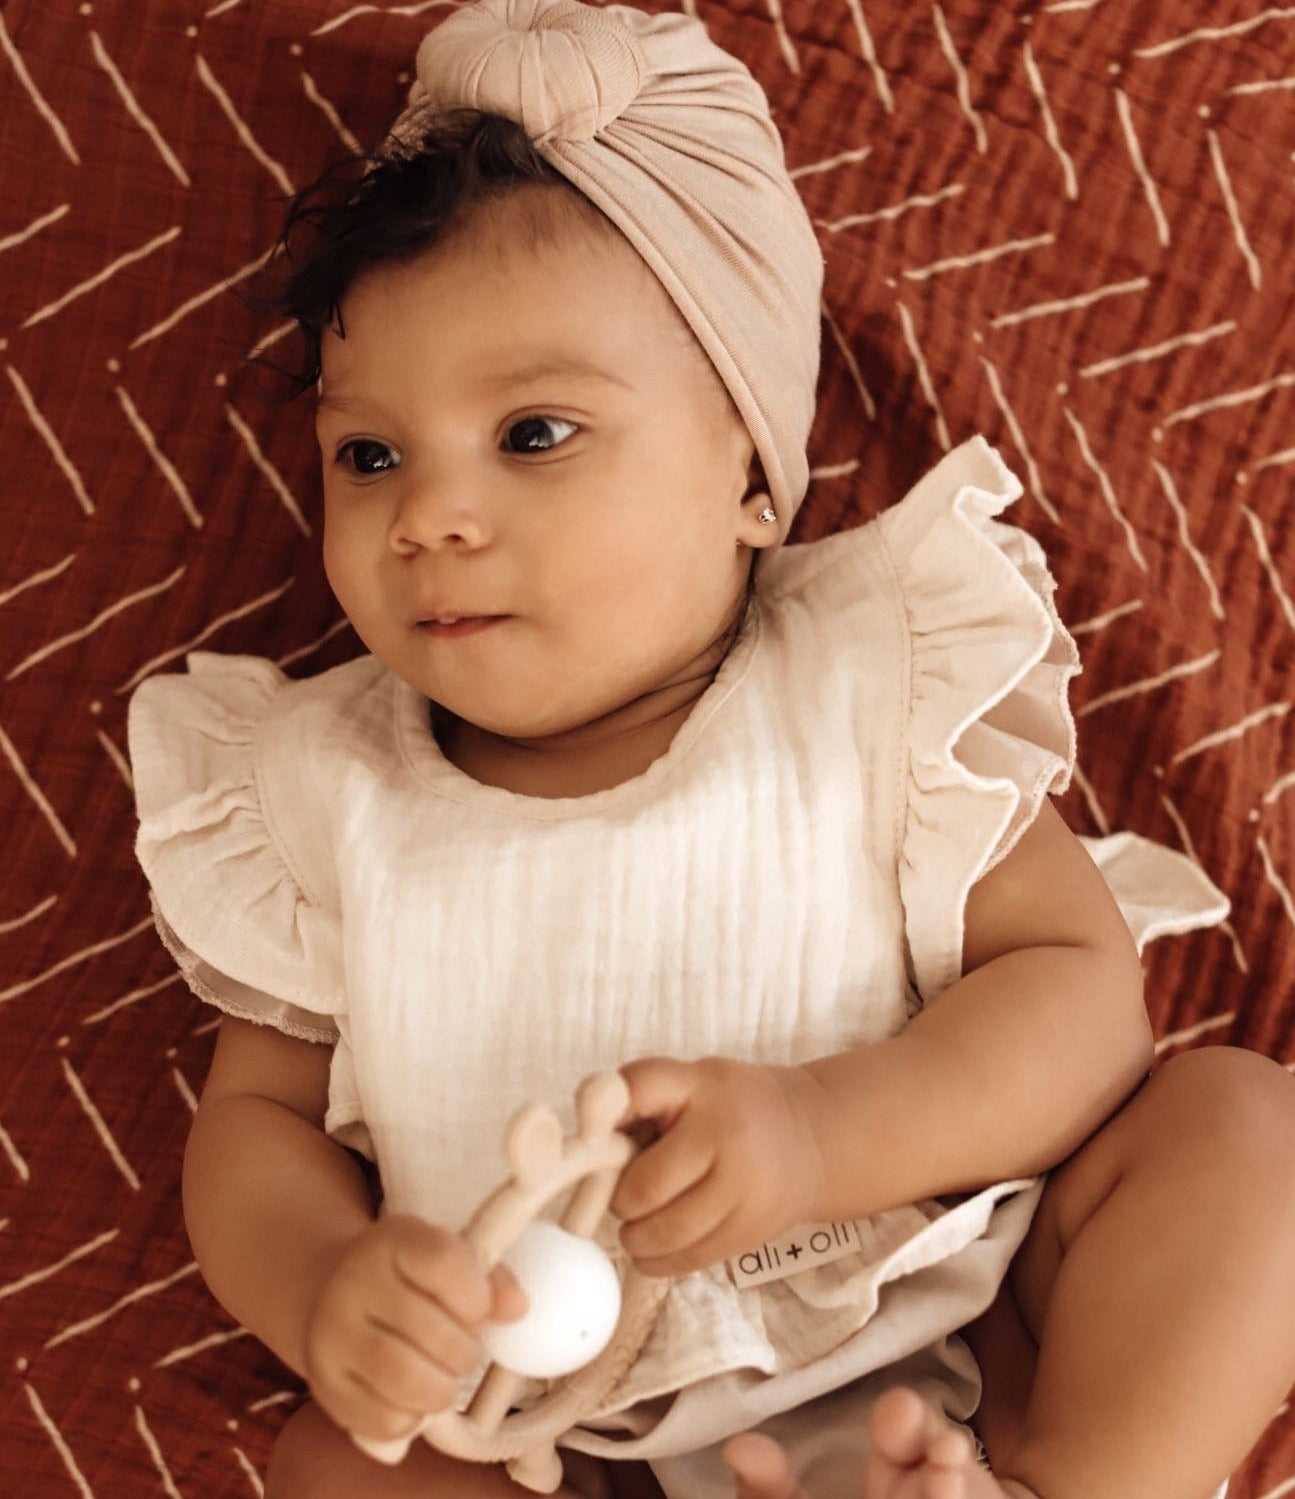 Ali+Oli Muslin Cotton Ruffle Baby Bib (Ivory)